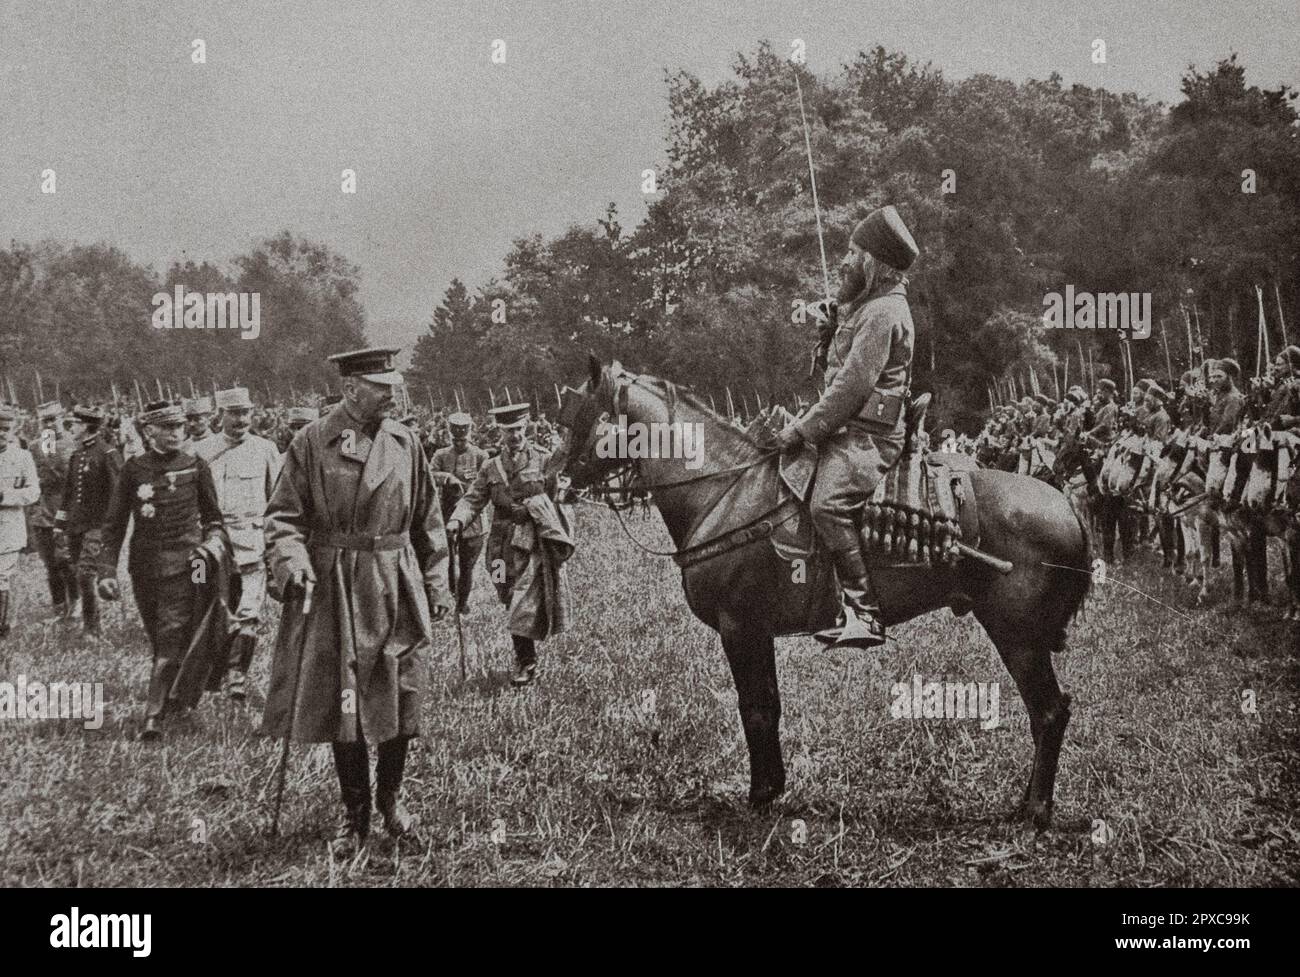 Prima guerra mondiale Lord Kitchener, dopo aver riesaminato le truppe indigene dell'esercito africano, scambia alcune parole in arabo con un ufficiale di spahis algerino. 1915 Foto Stock